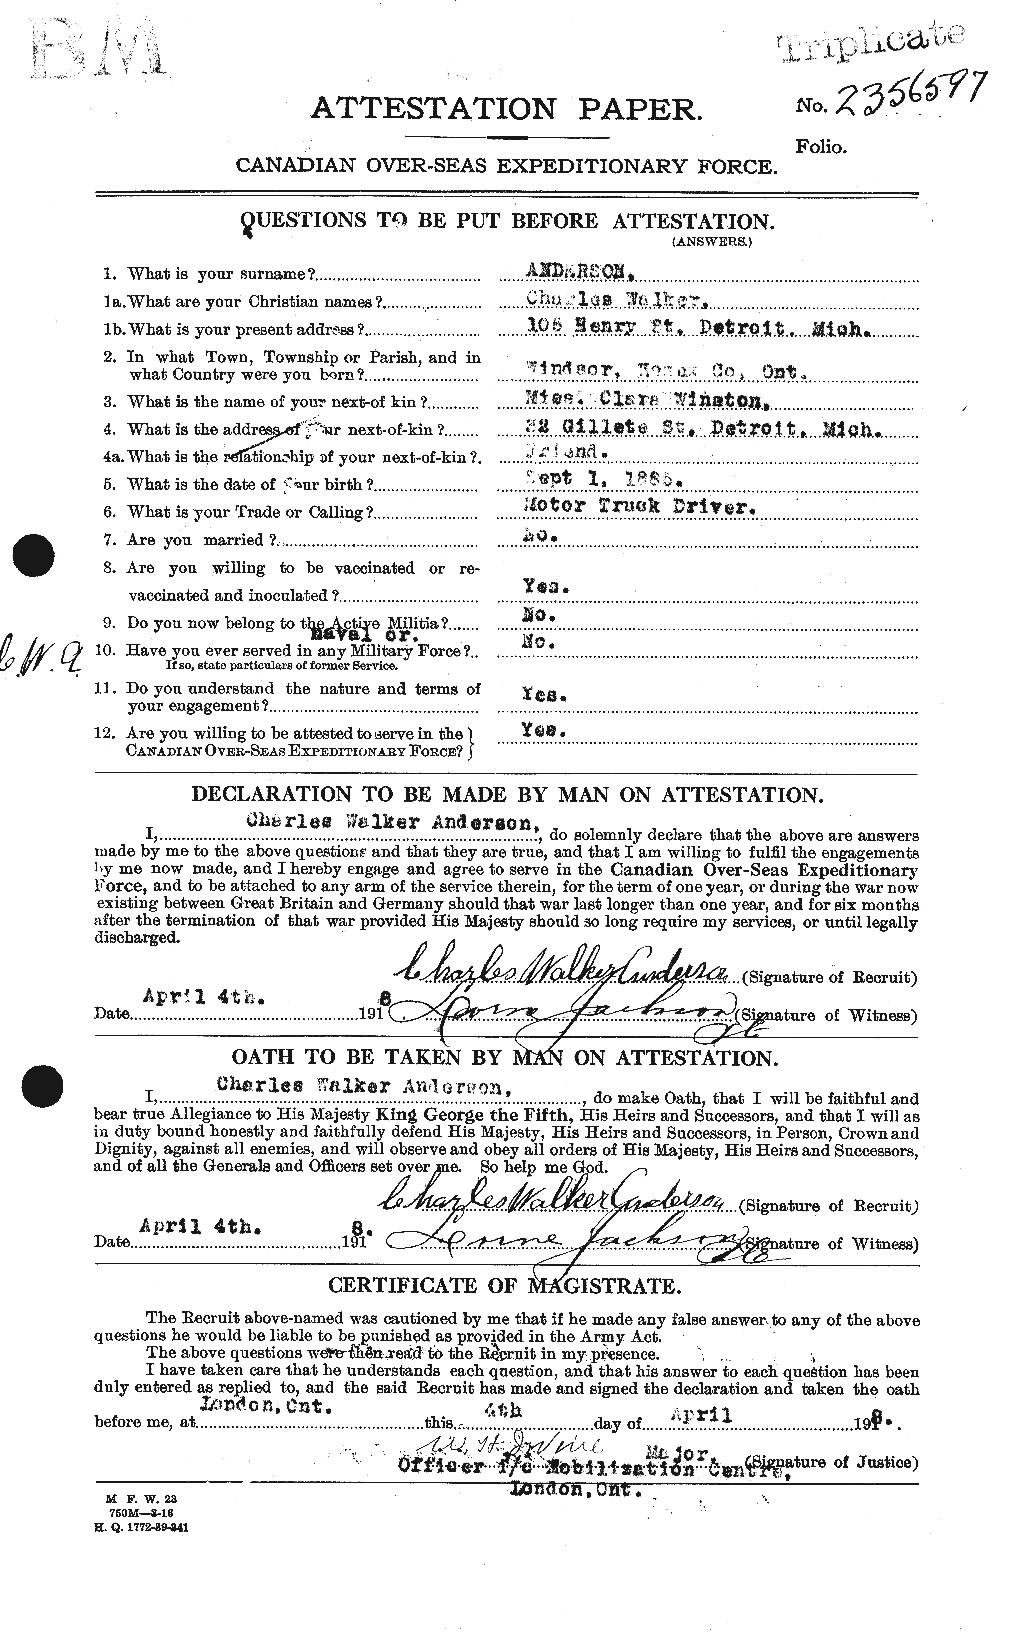 Dossiers du Personnel de la Première Guerre mondiale - CEC 209226a